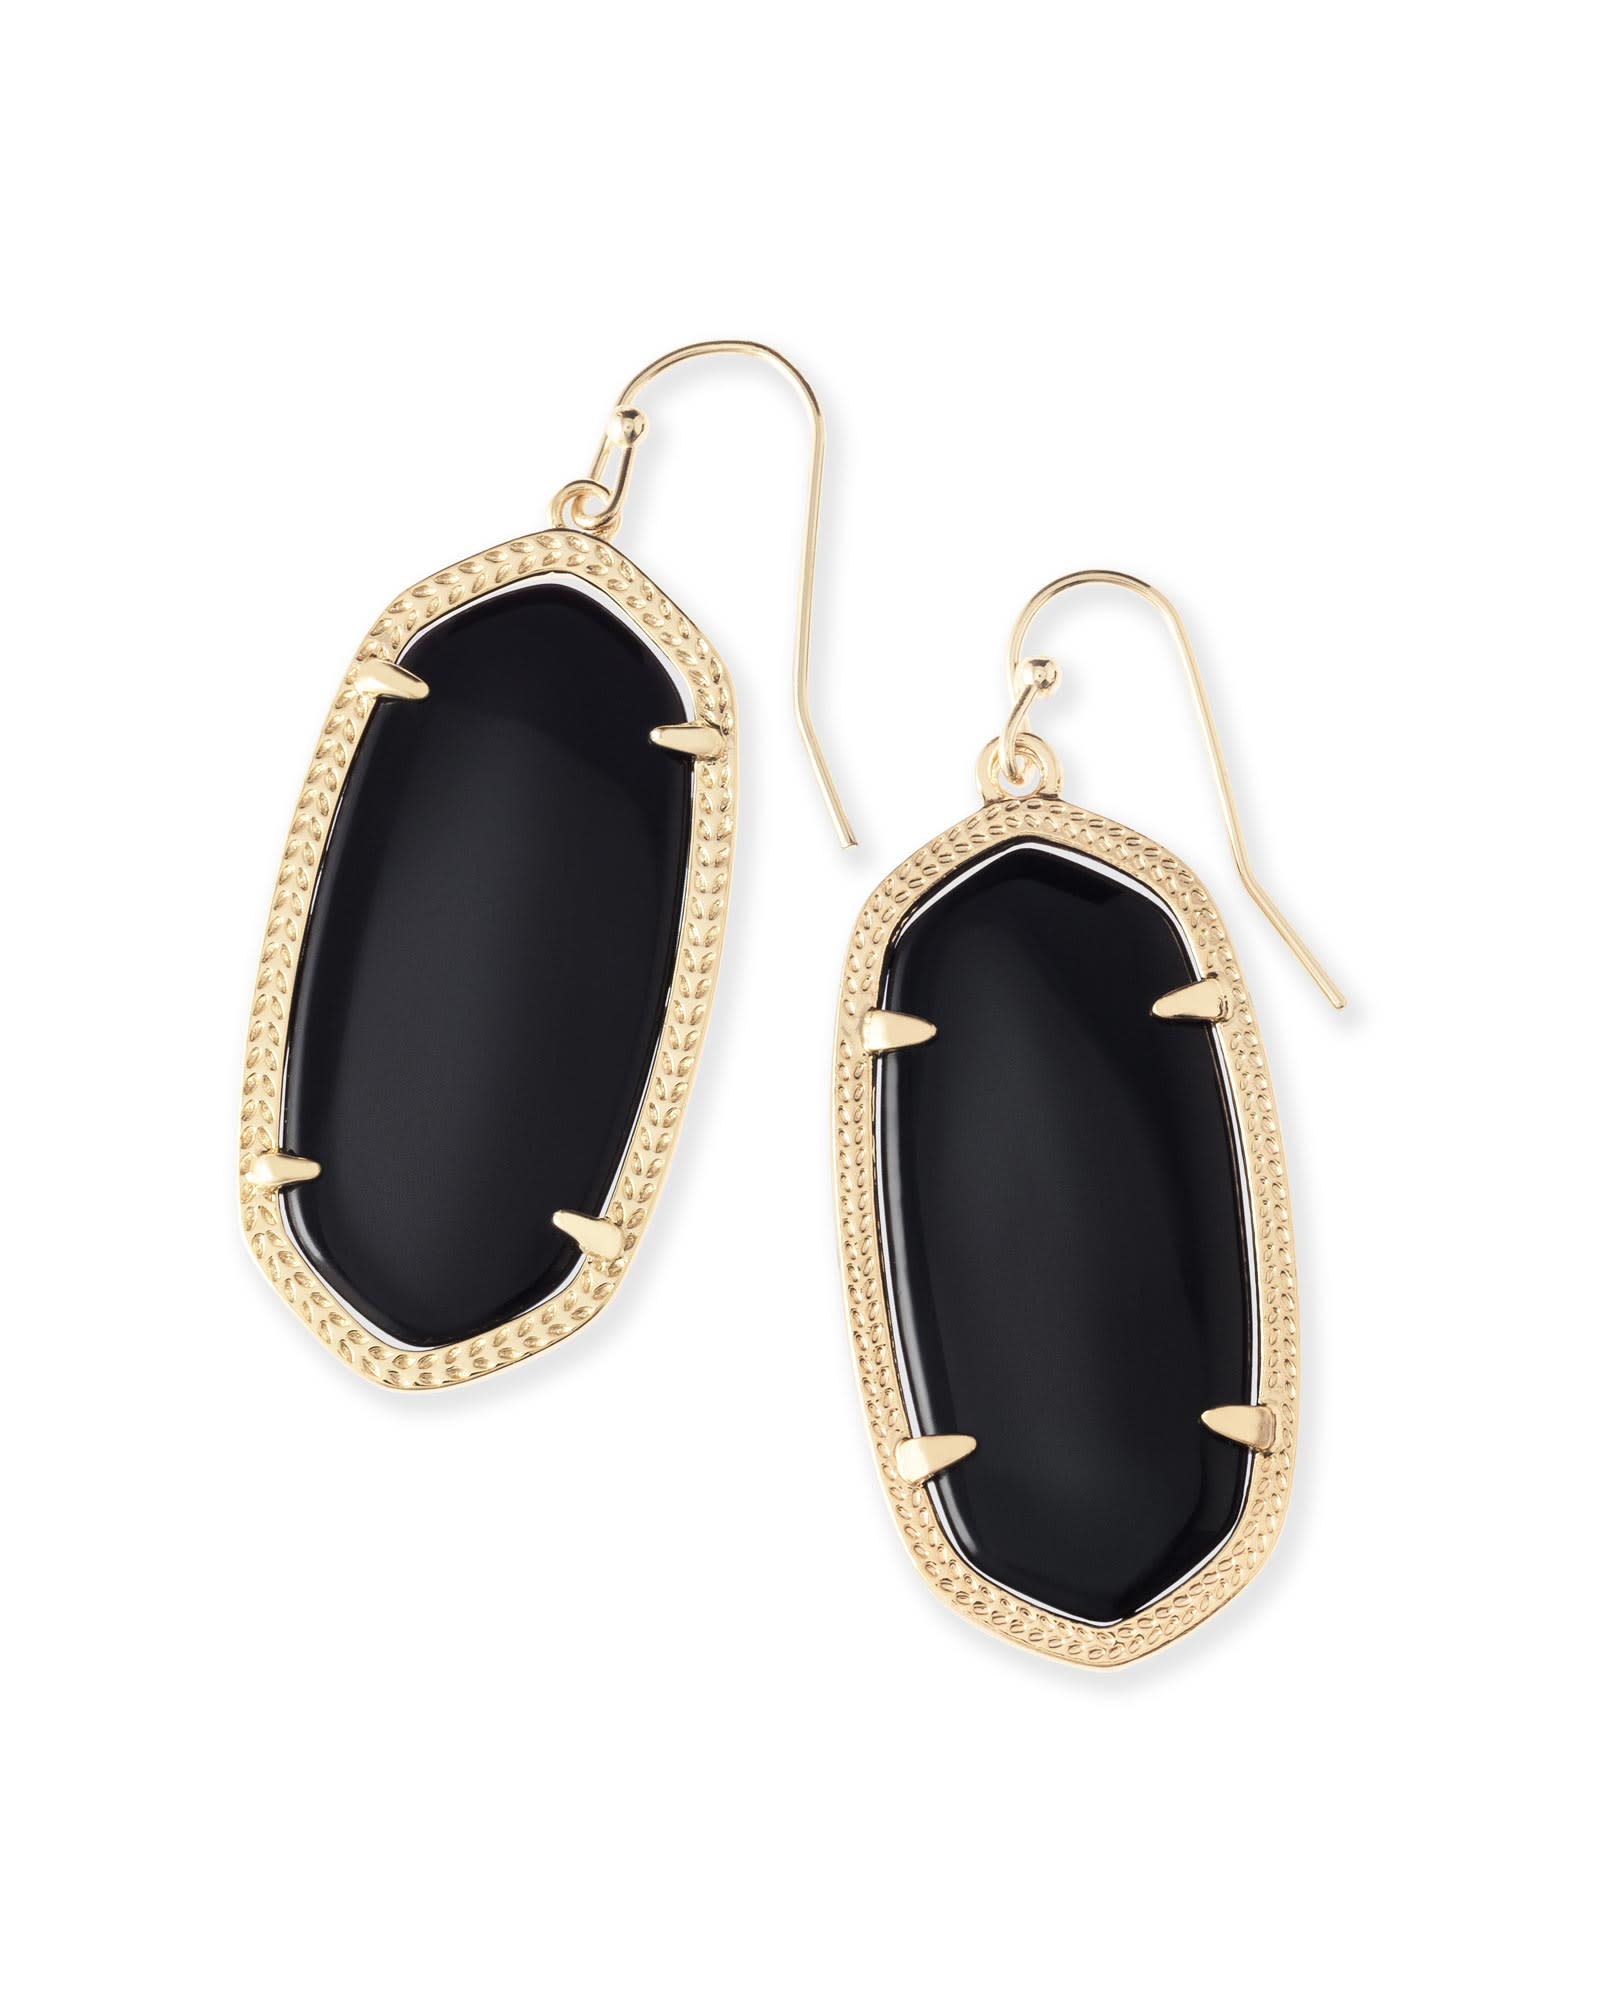 Kendra Scott Elle Gold Drop Earrings in Black | Opaque Glass